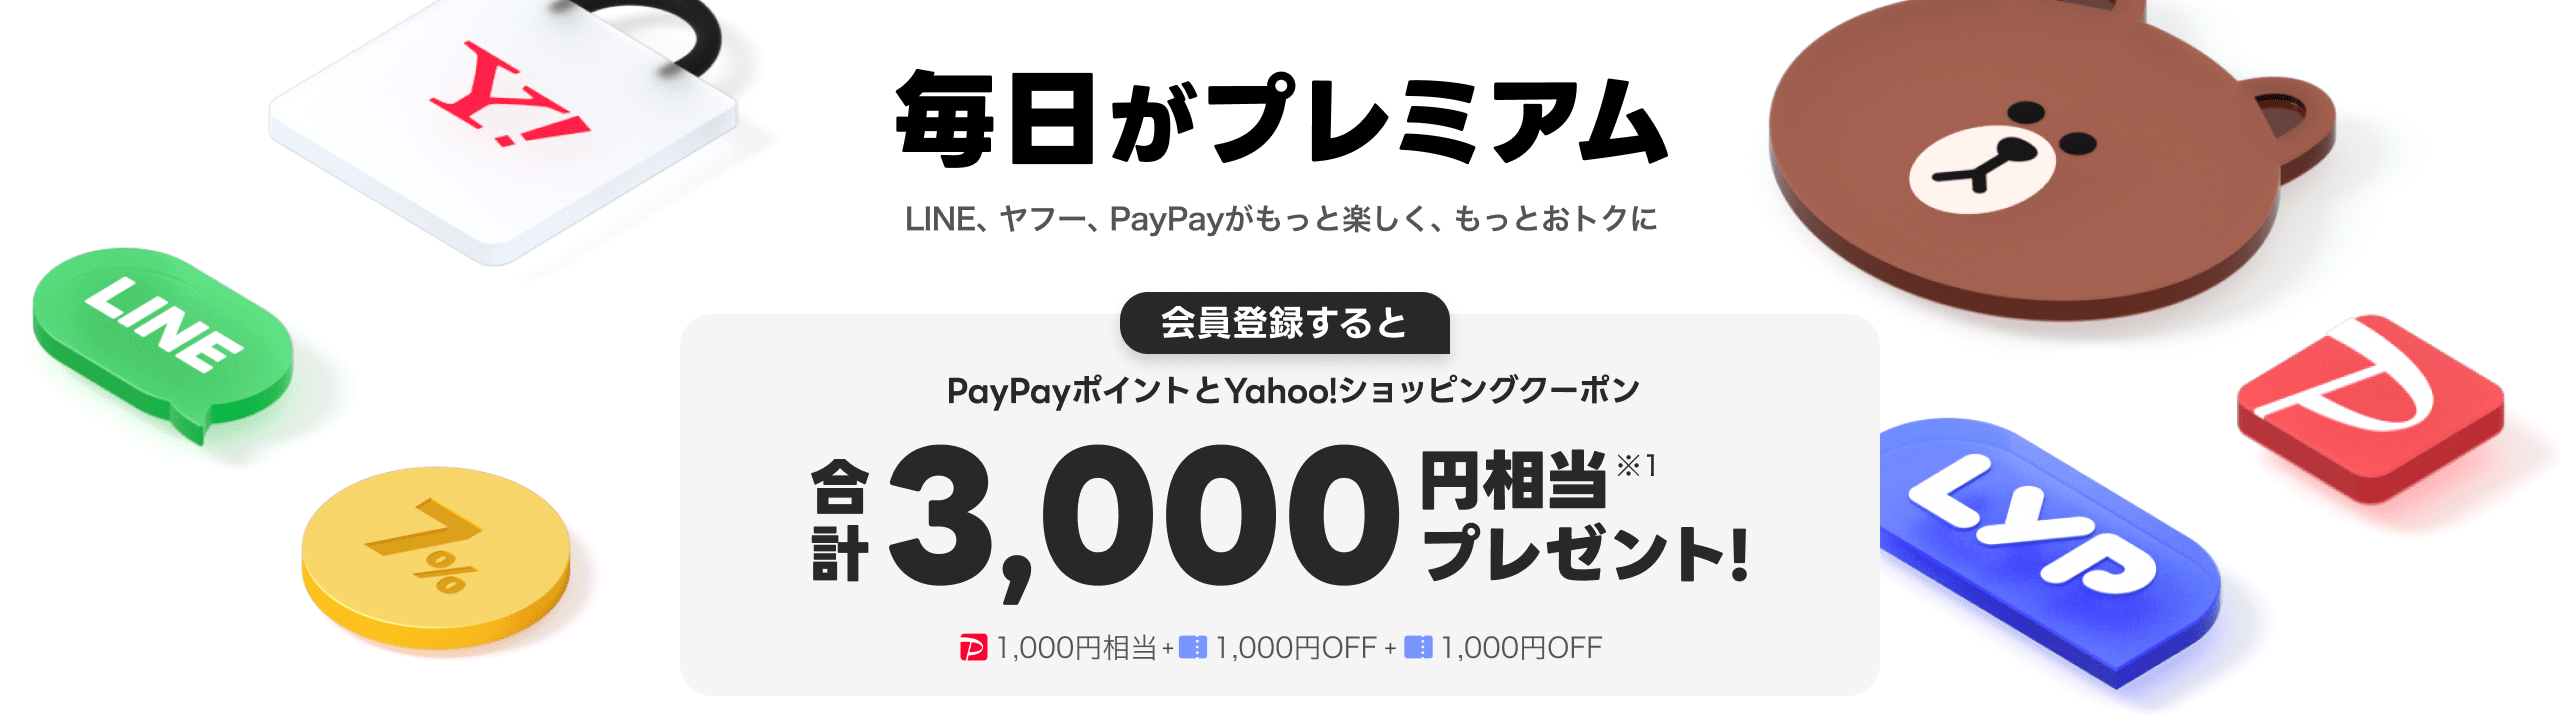 会員登録するとPayPayポイントとYahoo!ショッピングクーポン合計3,000円相当プレゼント!